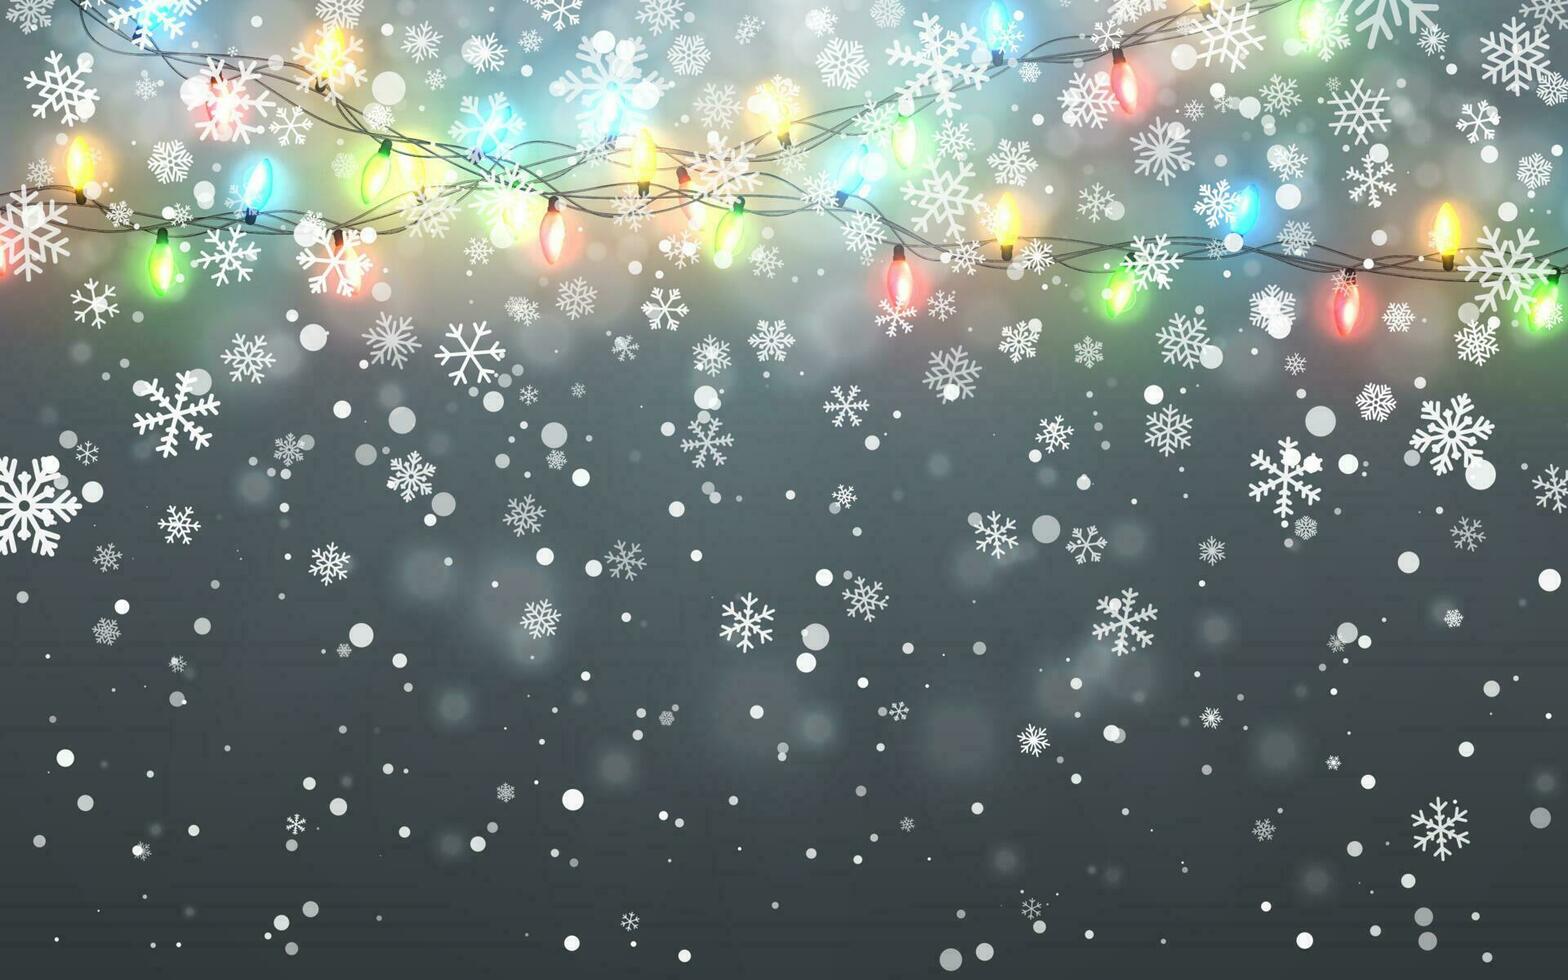 Weihnachten Schnee. fallen Weiß Schneeflocken auf dunkel Hintergrund. Weihnachten Farbe Girlande, festlich Dekorationen. glühend Weihnachten Beleuchtung. Vektor Schneefall, Schneeflocken fliegend im Winter Luft